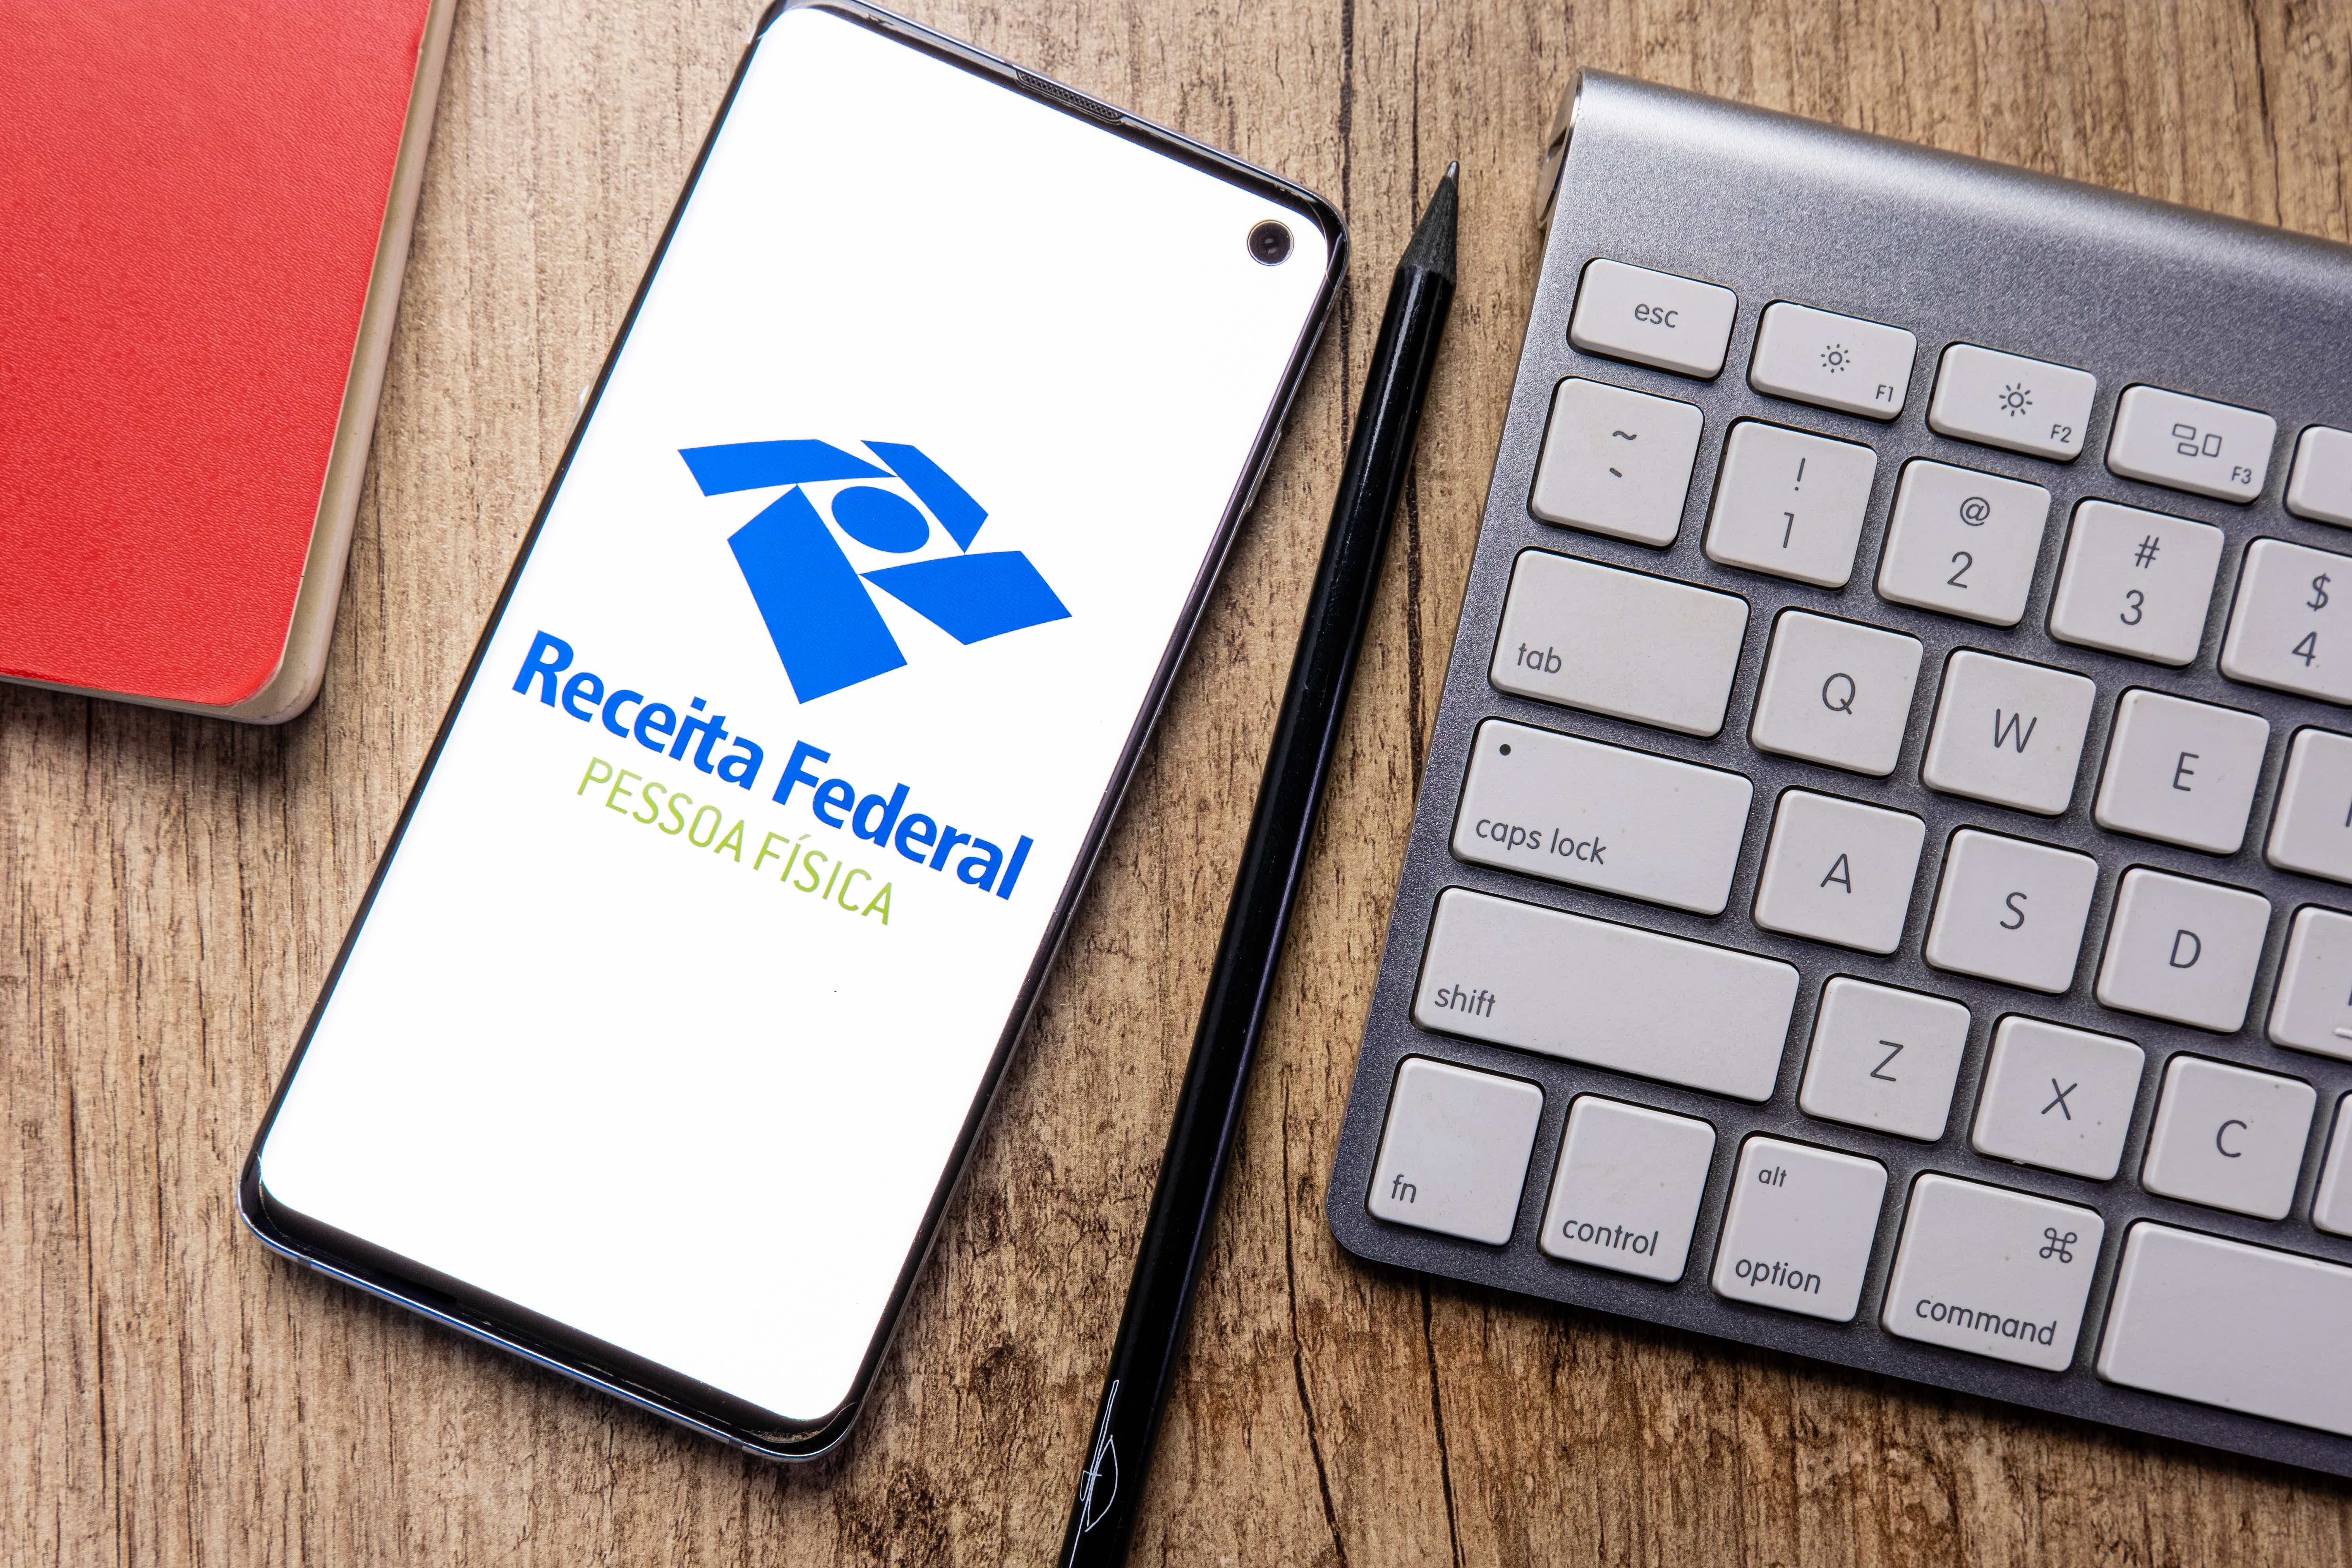 Imagem de um celular ao lado de um teclado repousado em uma superficie de madeira. O celular mostra a logo da receita federal.